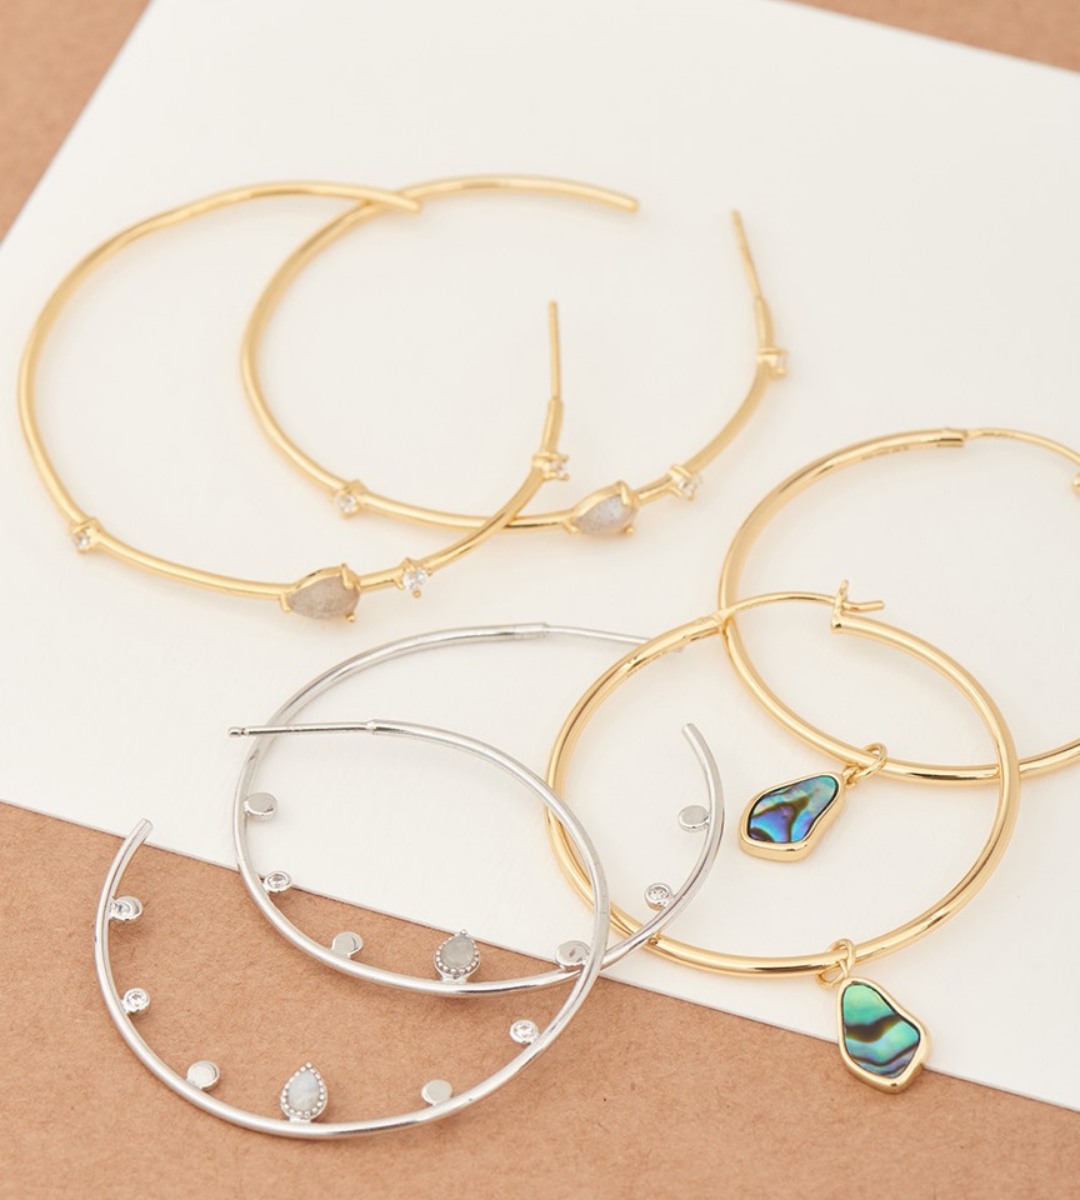 Hoop earrings by Ania haie for summer jewellery